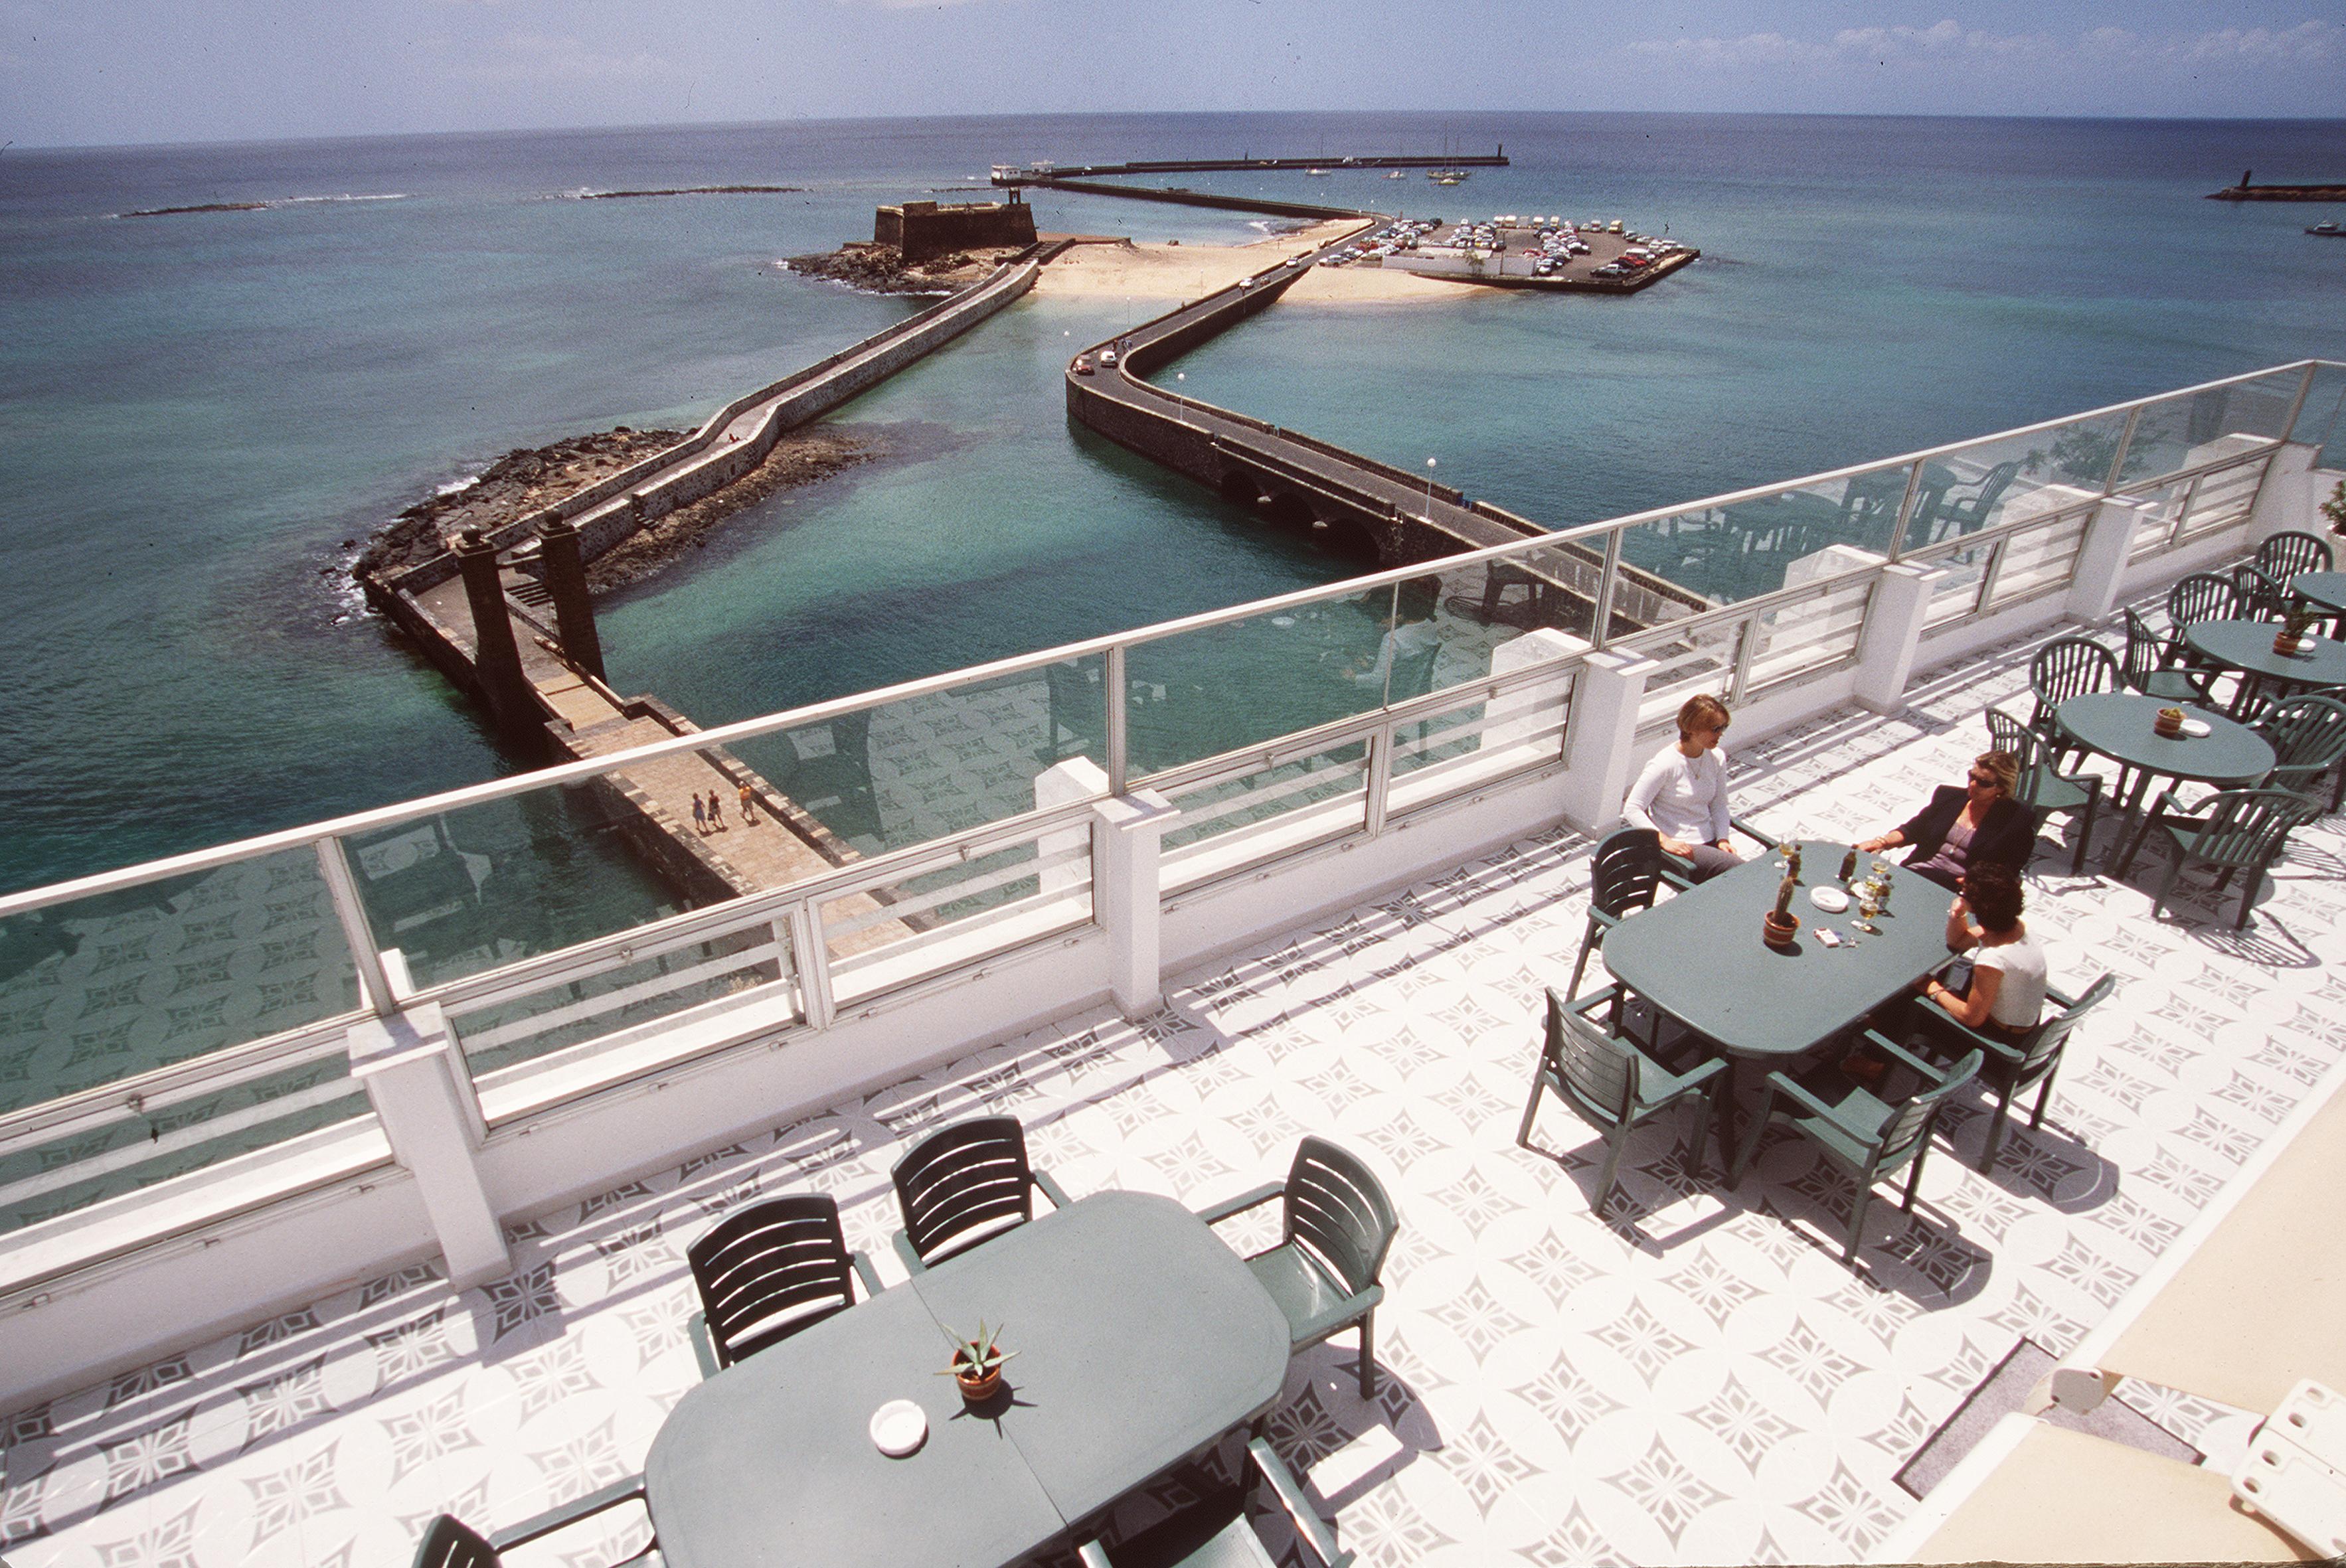 Hotel Miramar Arrecife  Exterior foto